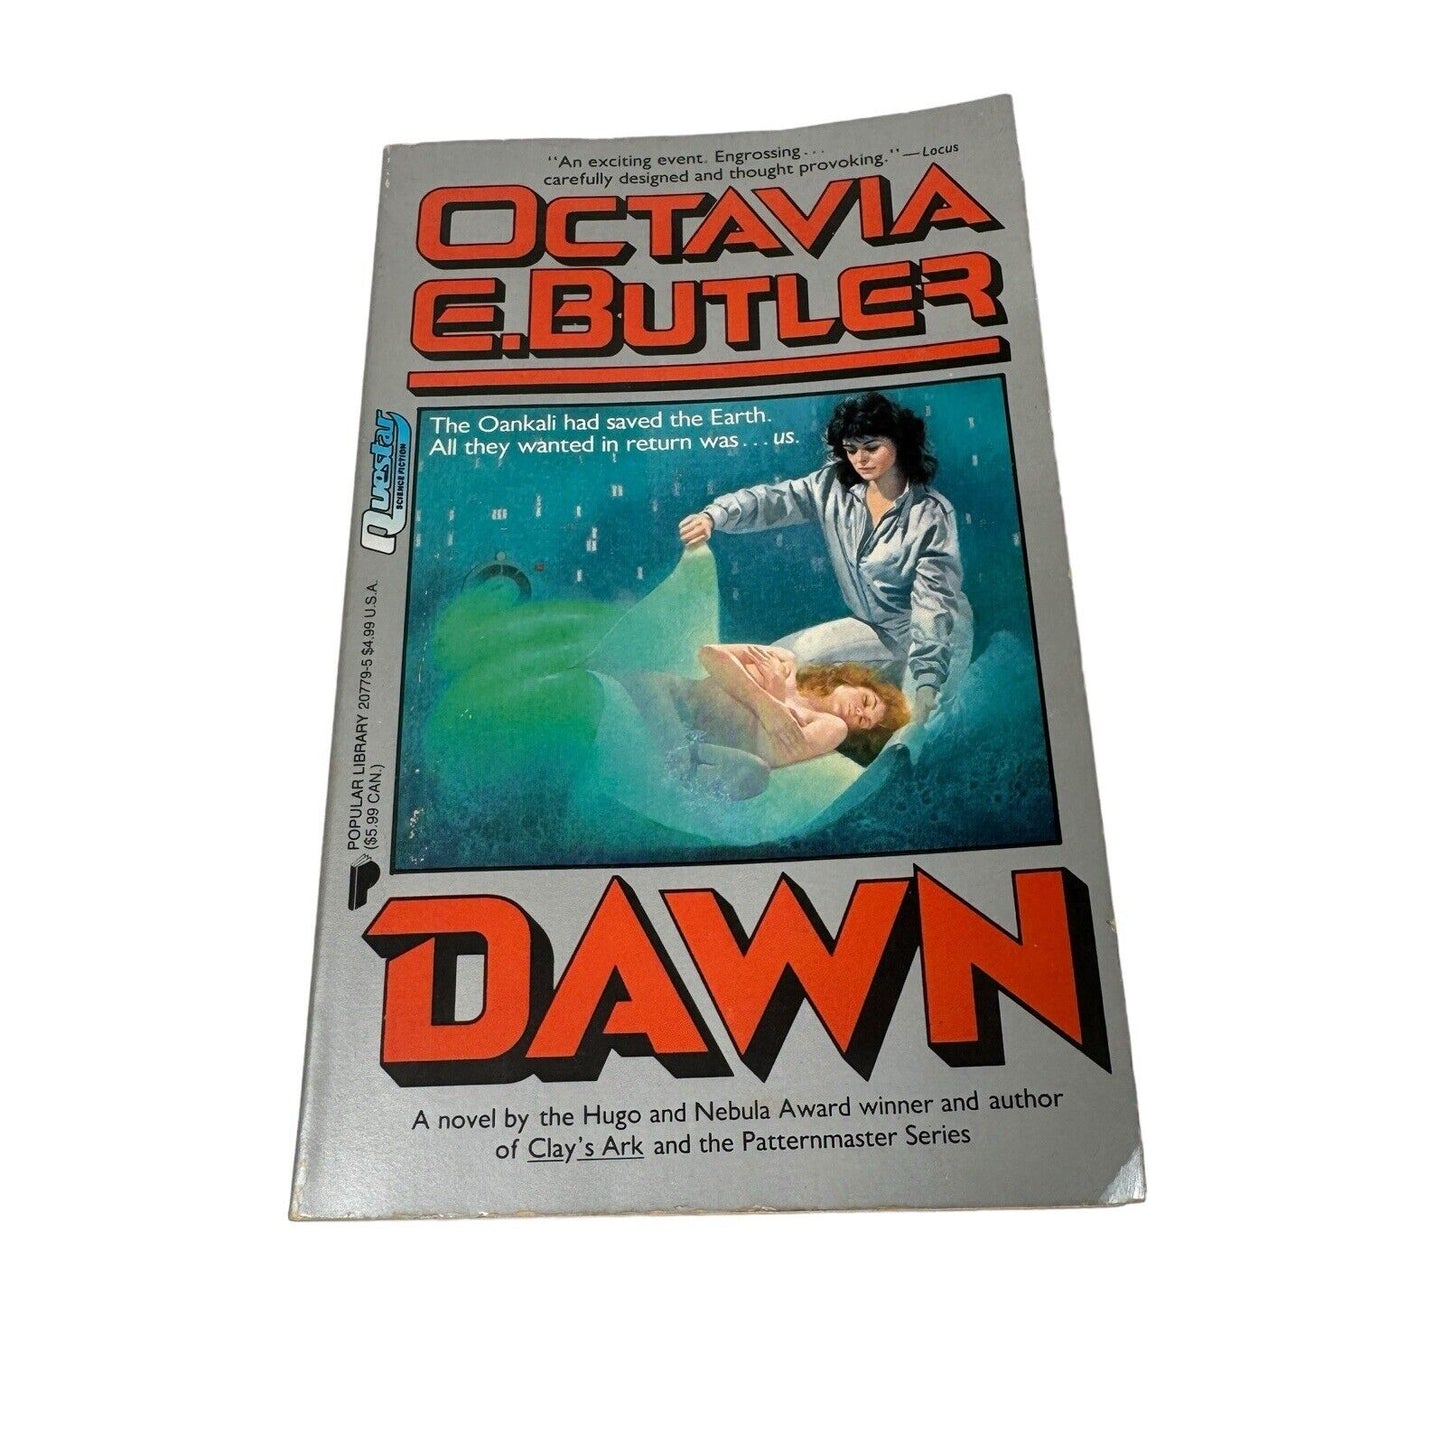 Dawn Xenogenesis Octavia E. Butler Popular Library Paperback 1988 Novel Questar